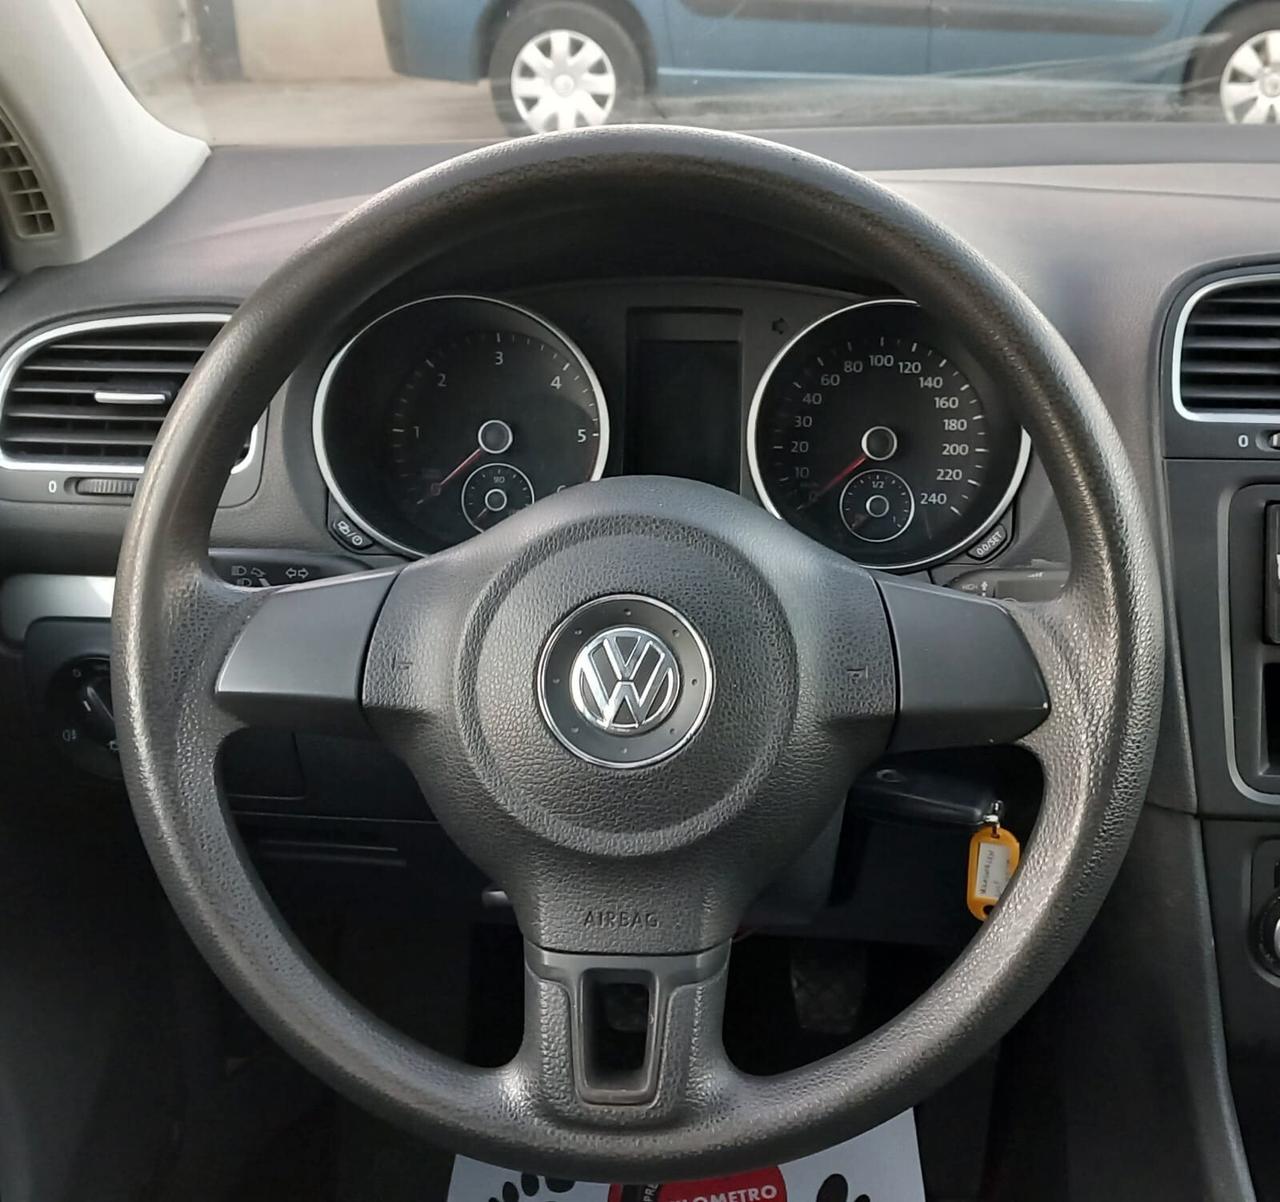 Volkswagen Golf Business 1.6 TDI 5p. vedi promo in descrizione